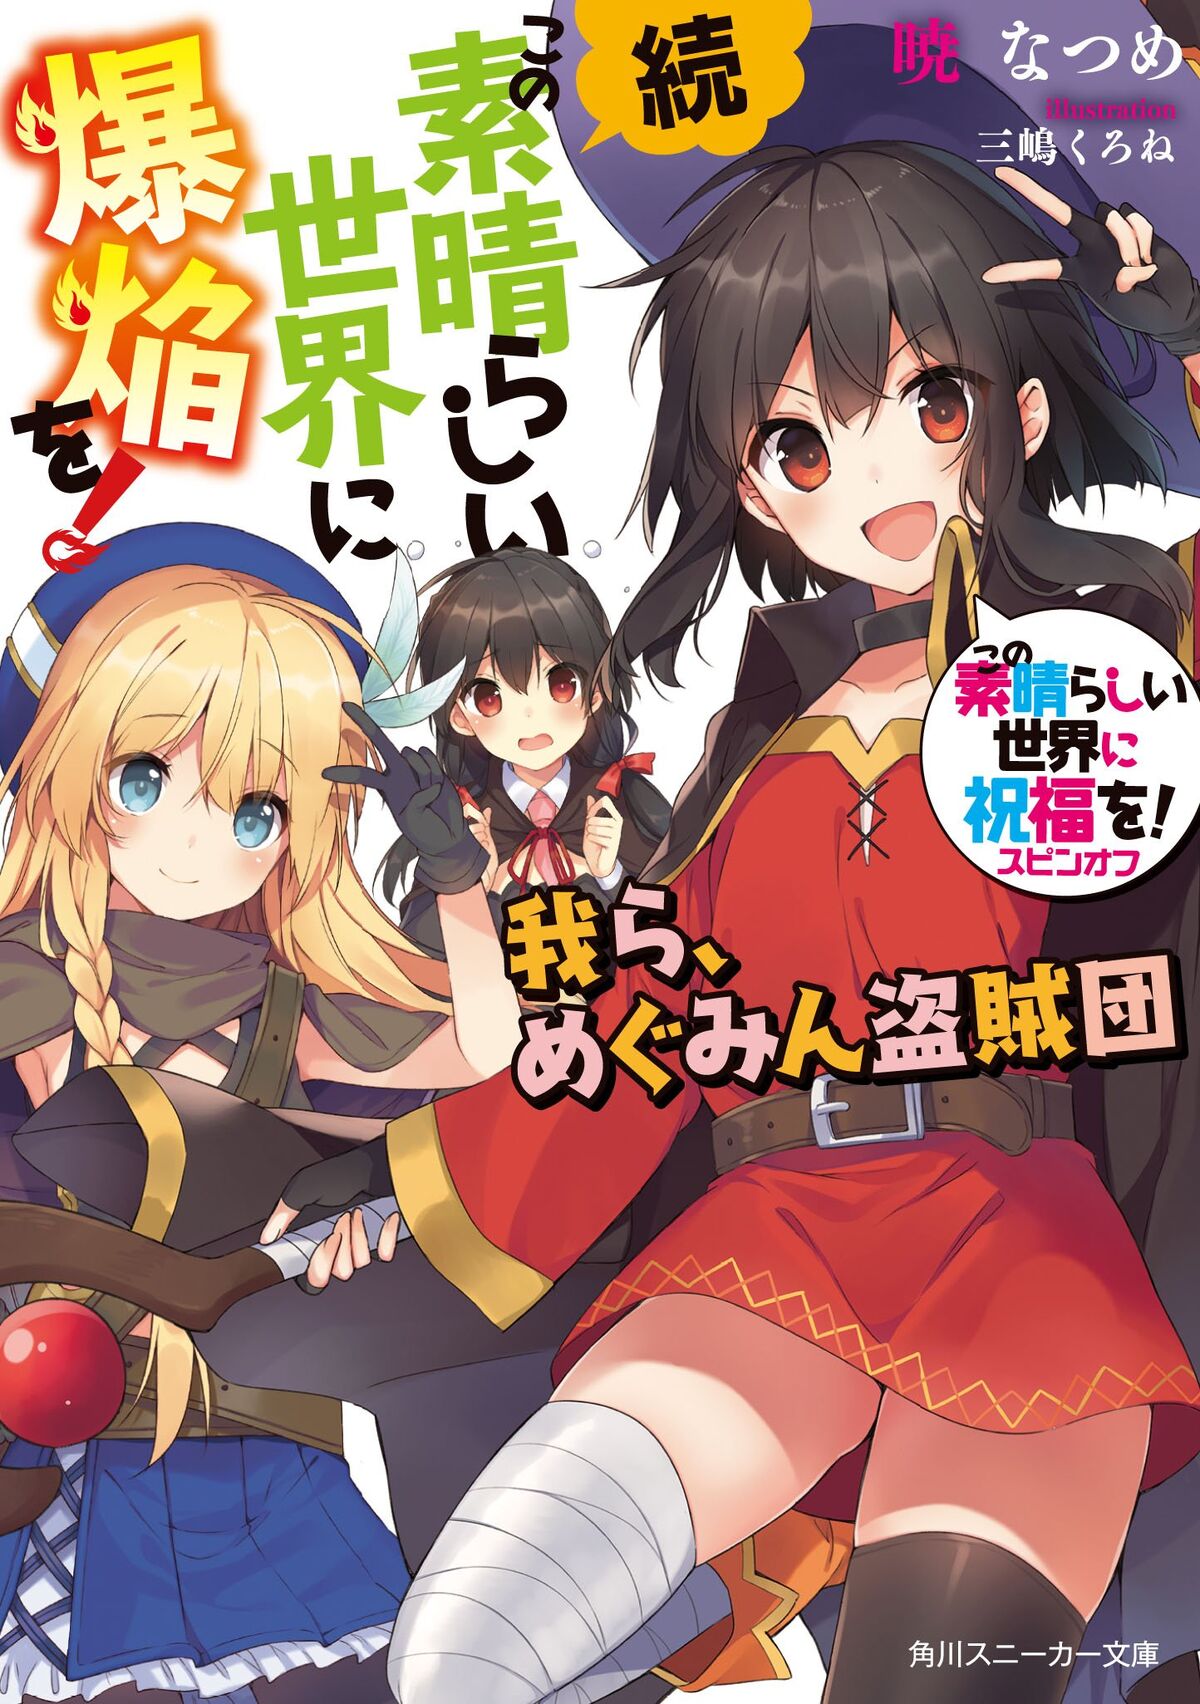 Bakuen Light Novel Volume 4, Kono Subarashii Sekai ni Shukufuku wo! Wiki